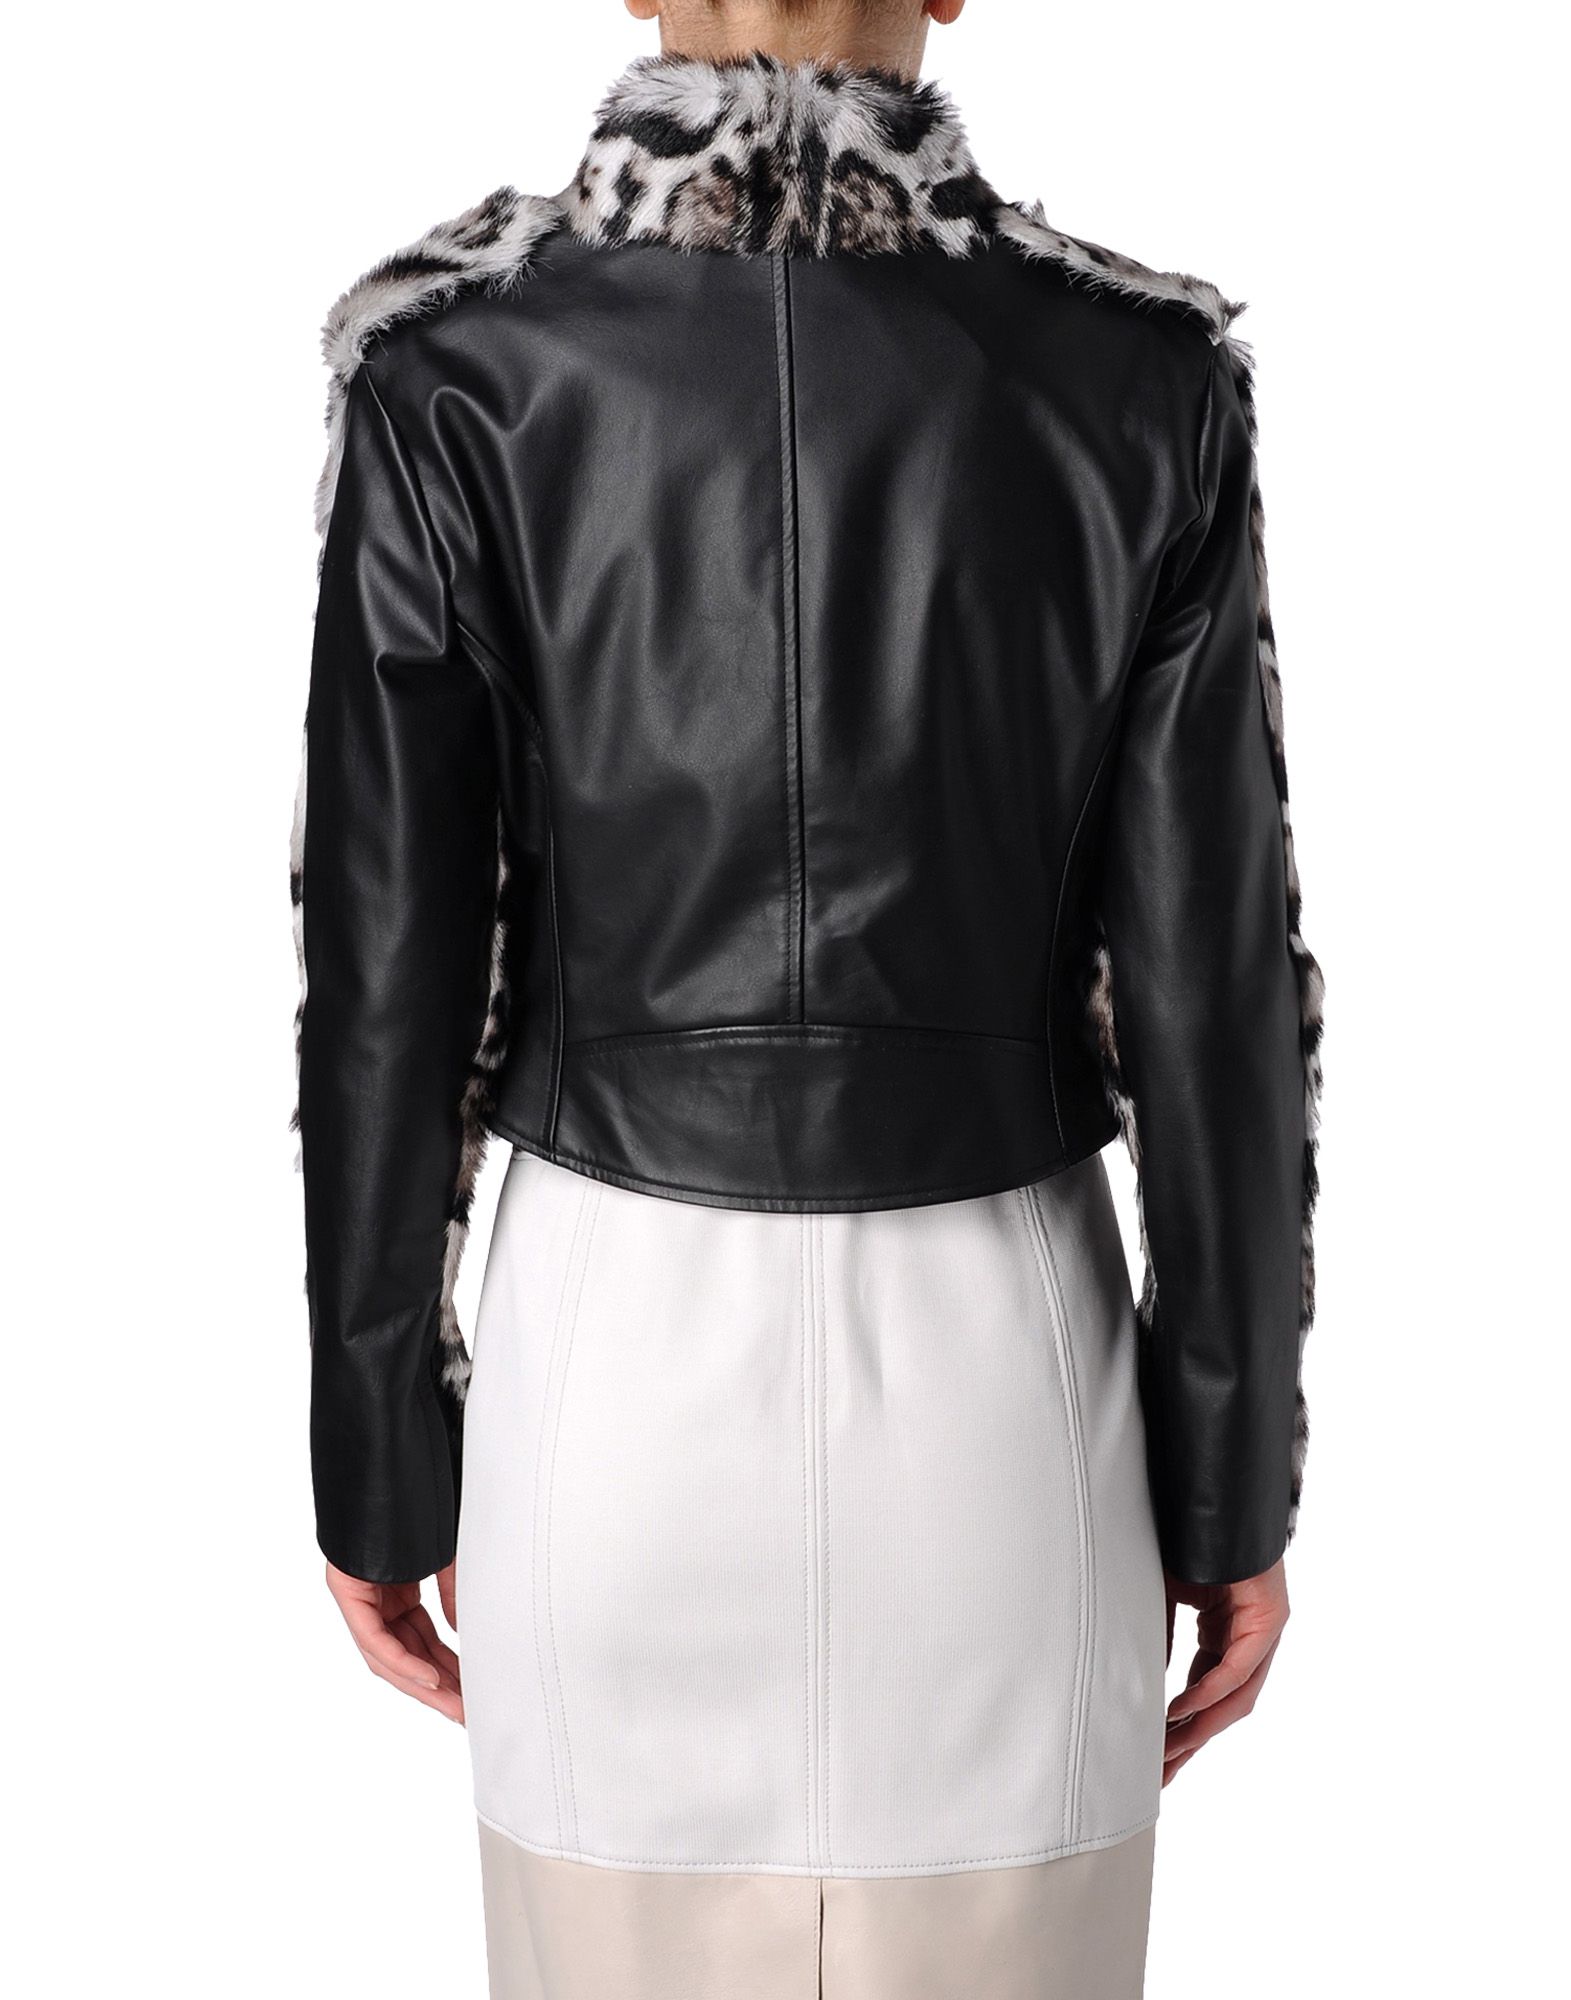 Christopher Kane Jaguar Leather And Fur Biker Jacket in Black/Grey ...